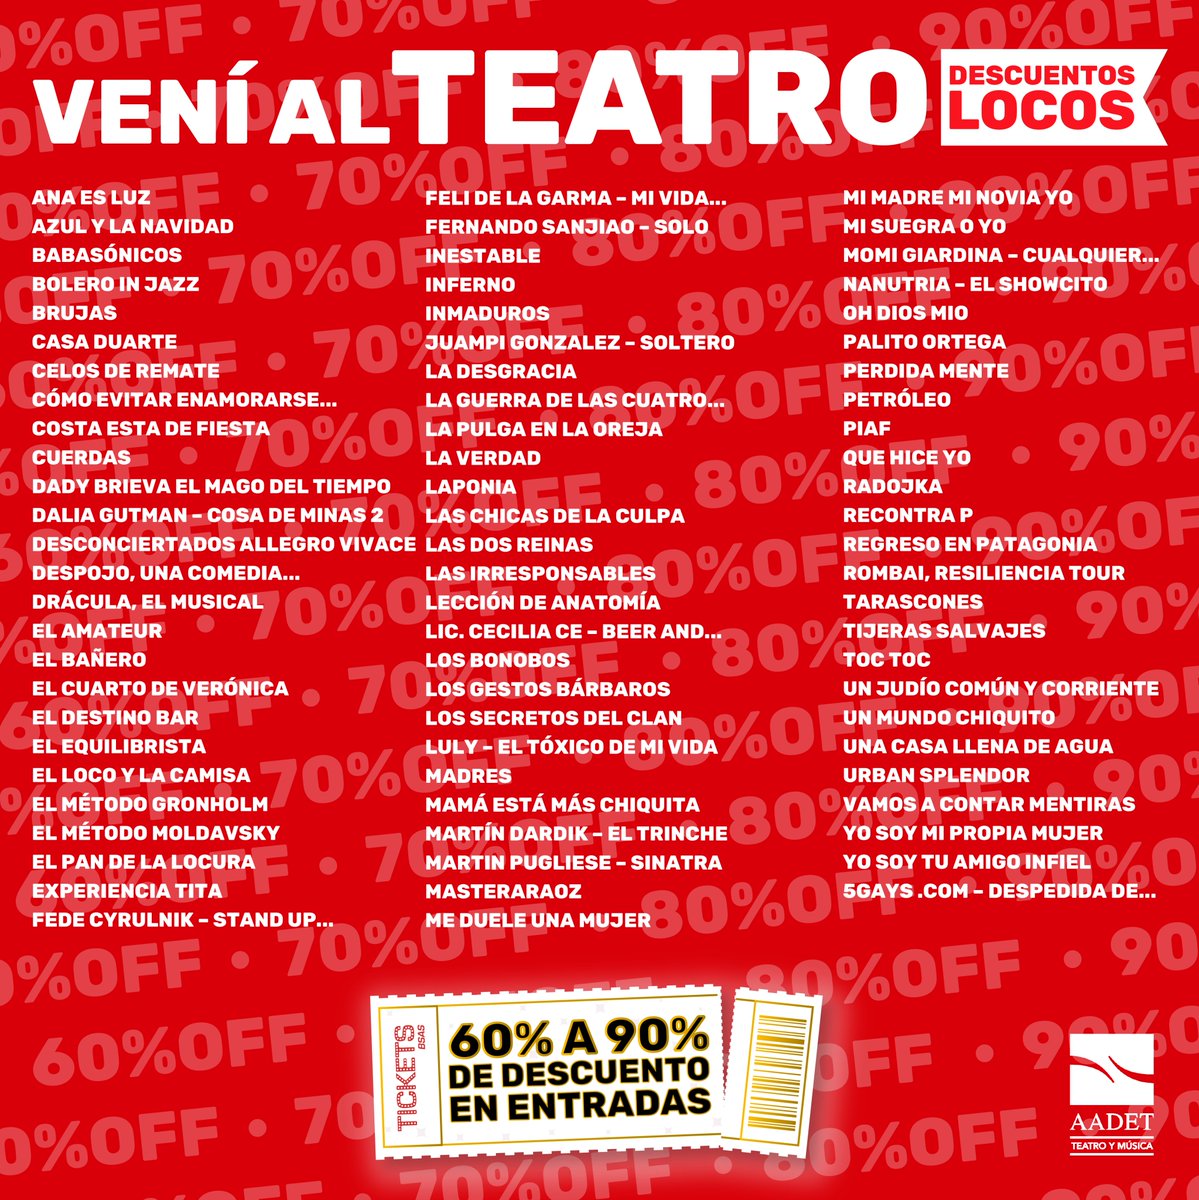 📢 Los principales títulos de la cartelera son parte de #VENIALTEATRO 🎭🎵 Podés elegir entre 80 espectáculos para disfrutar con descuentos locos del 60% al 90%. 👉🏻 Enterate los detalles en: venialteatro.org